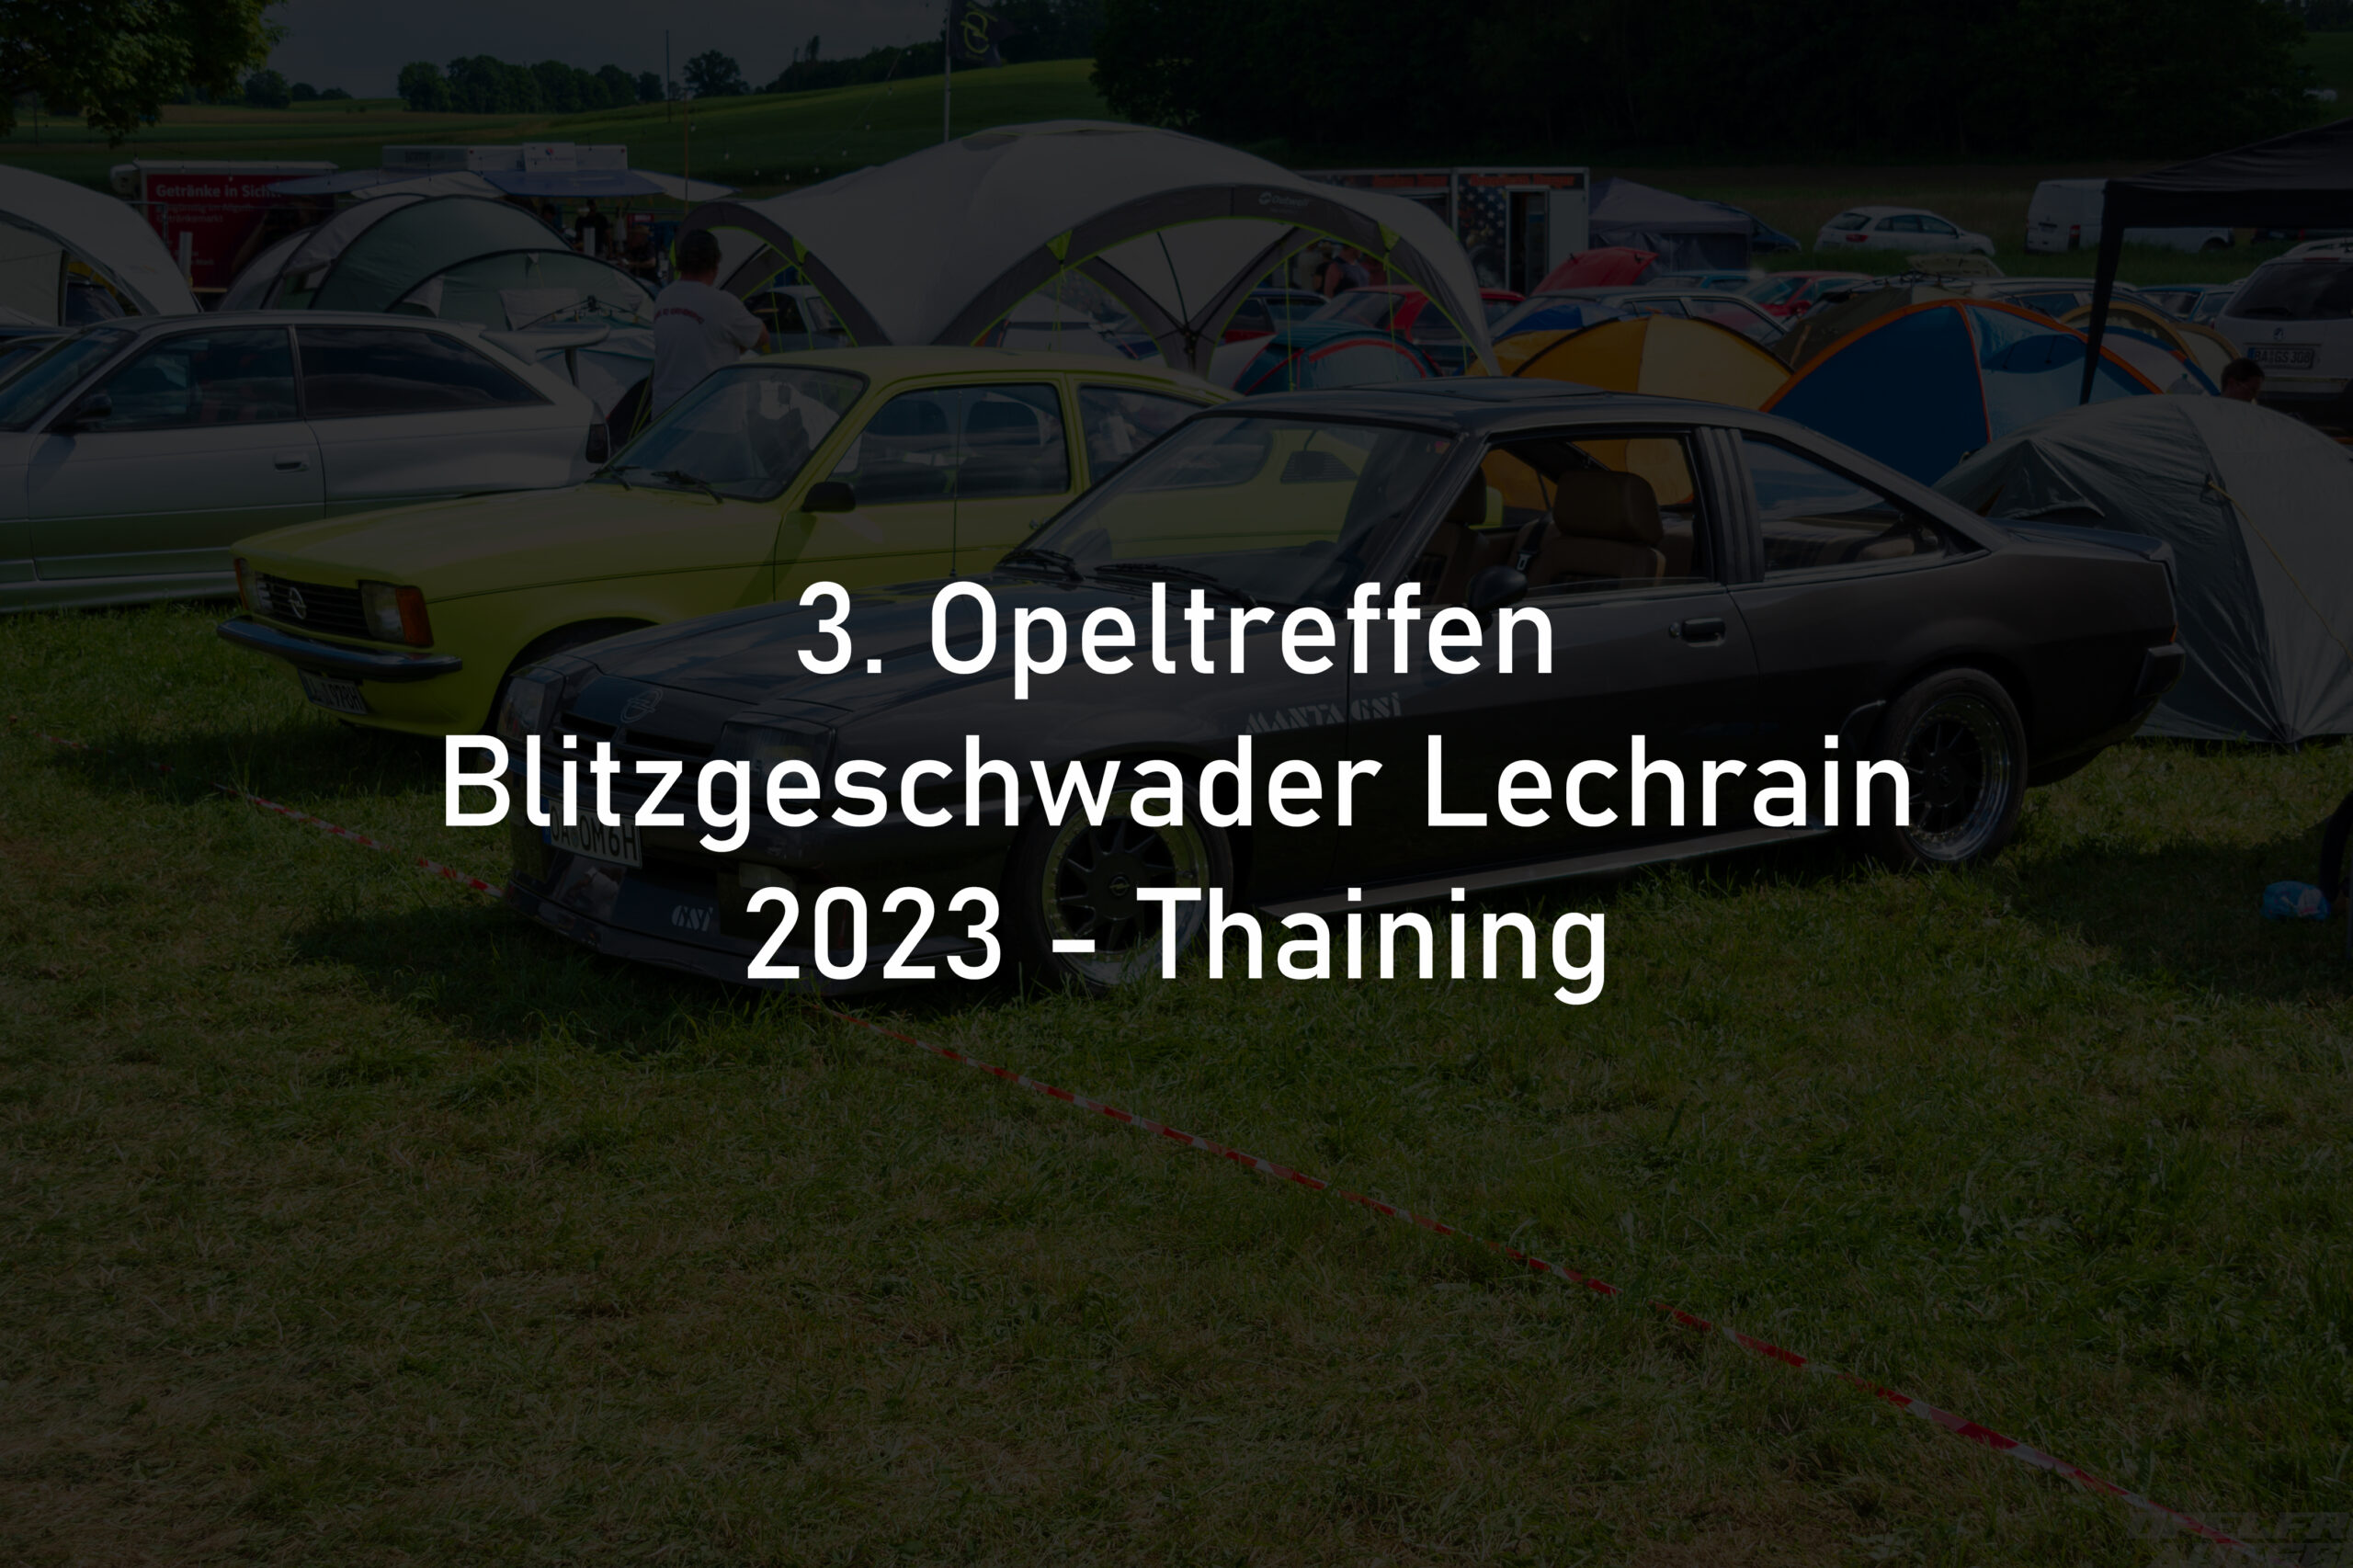 3. Opeltreffen Blitzgeschwader Lechrain 2023